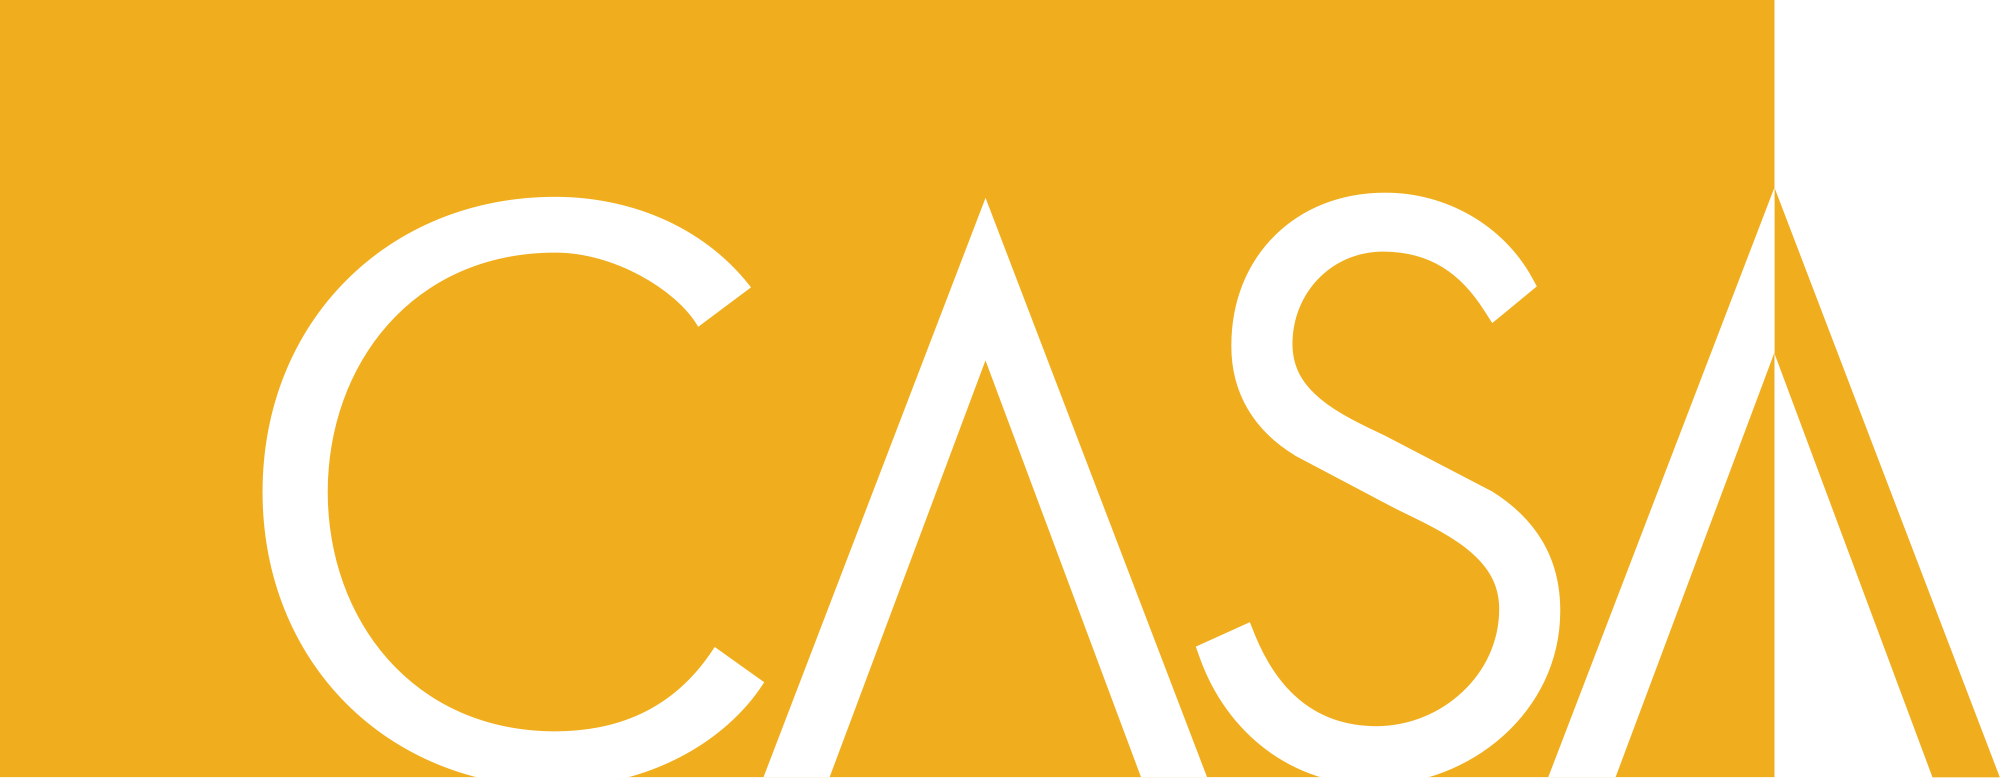 Casa Logo - CASA logo.svg